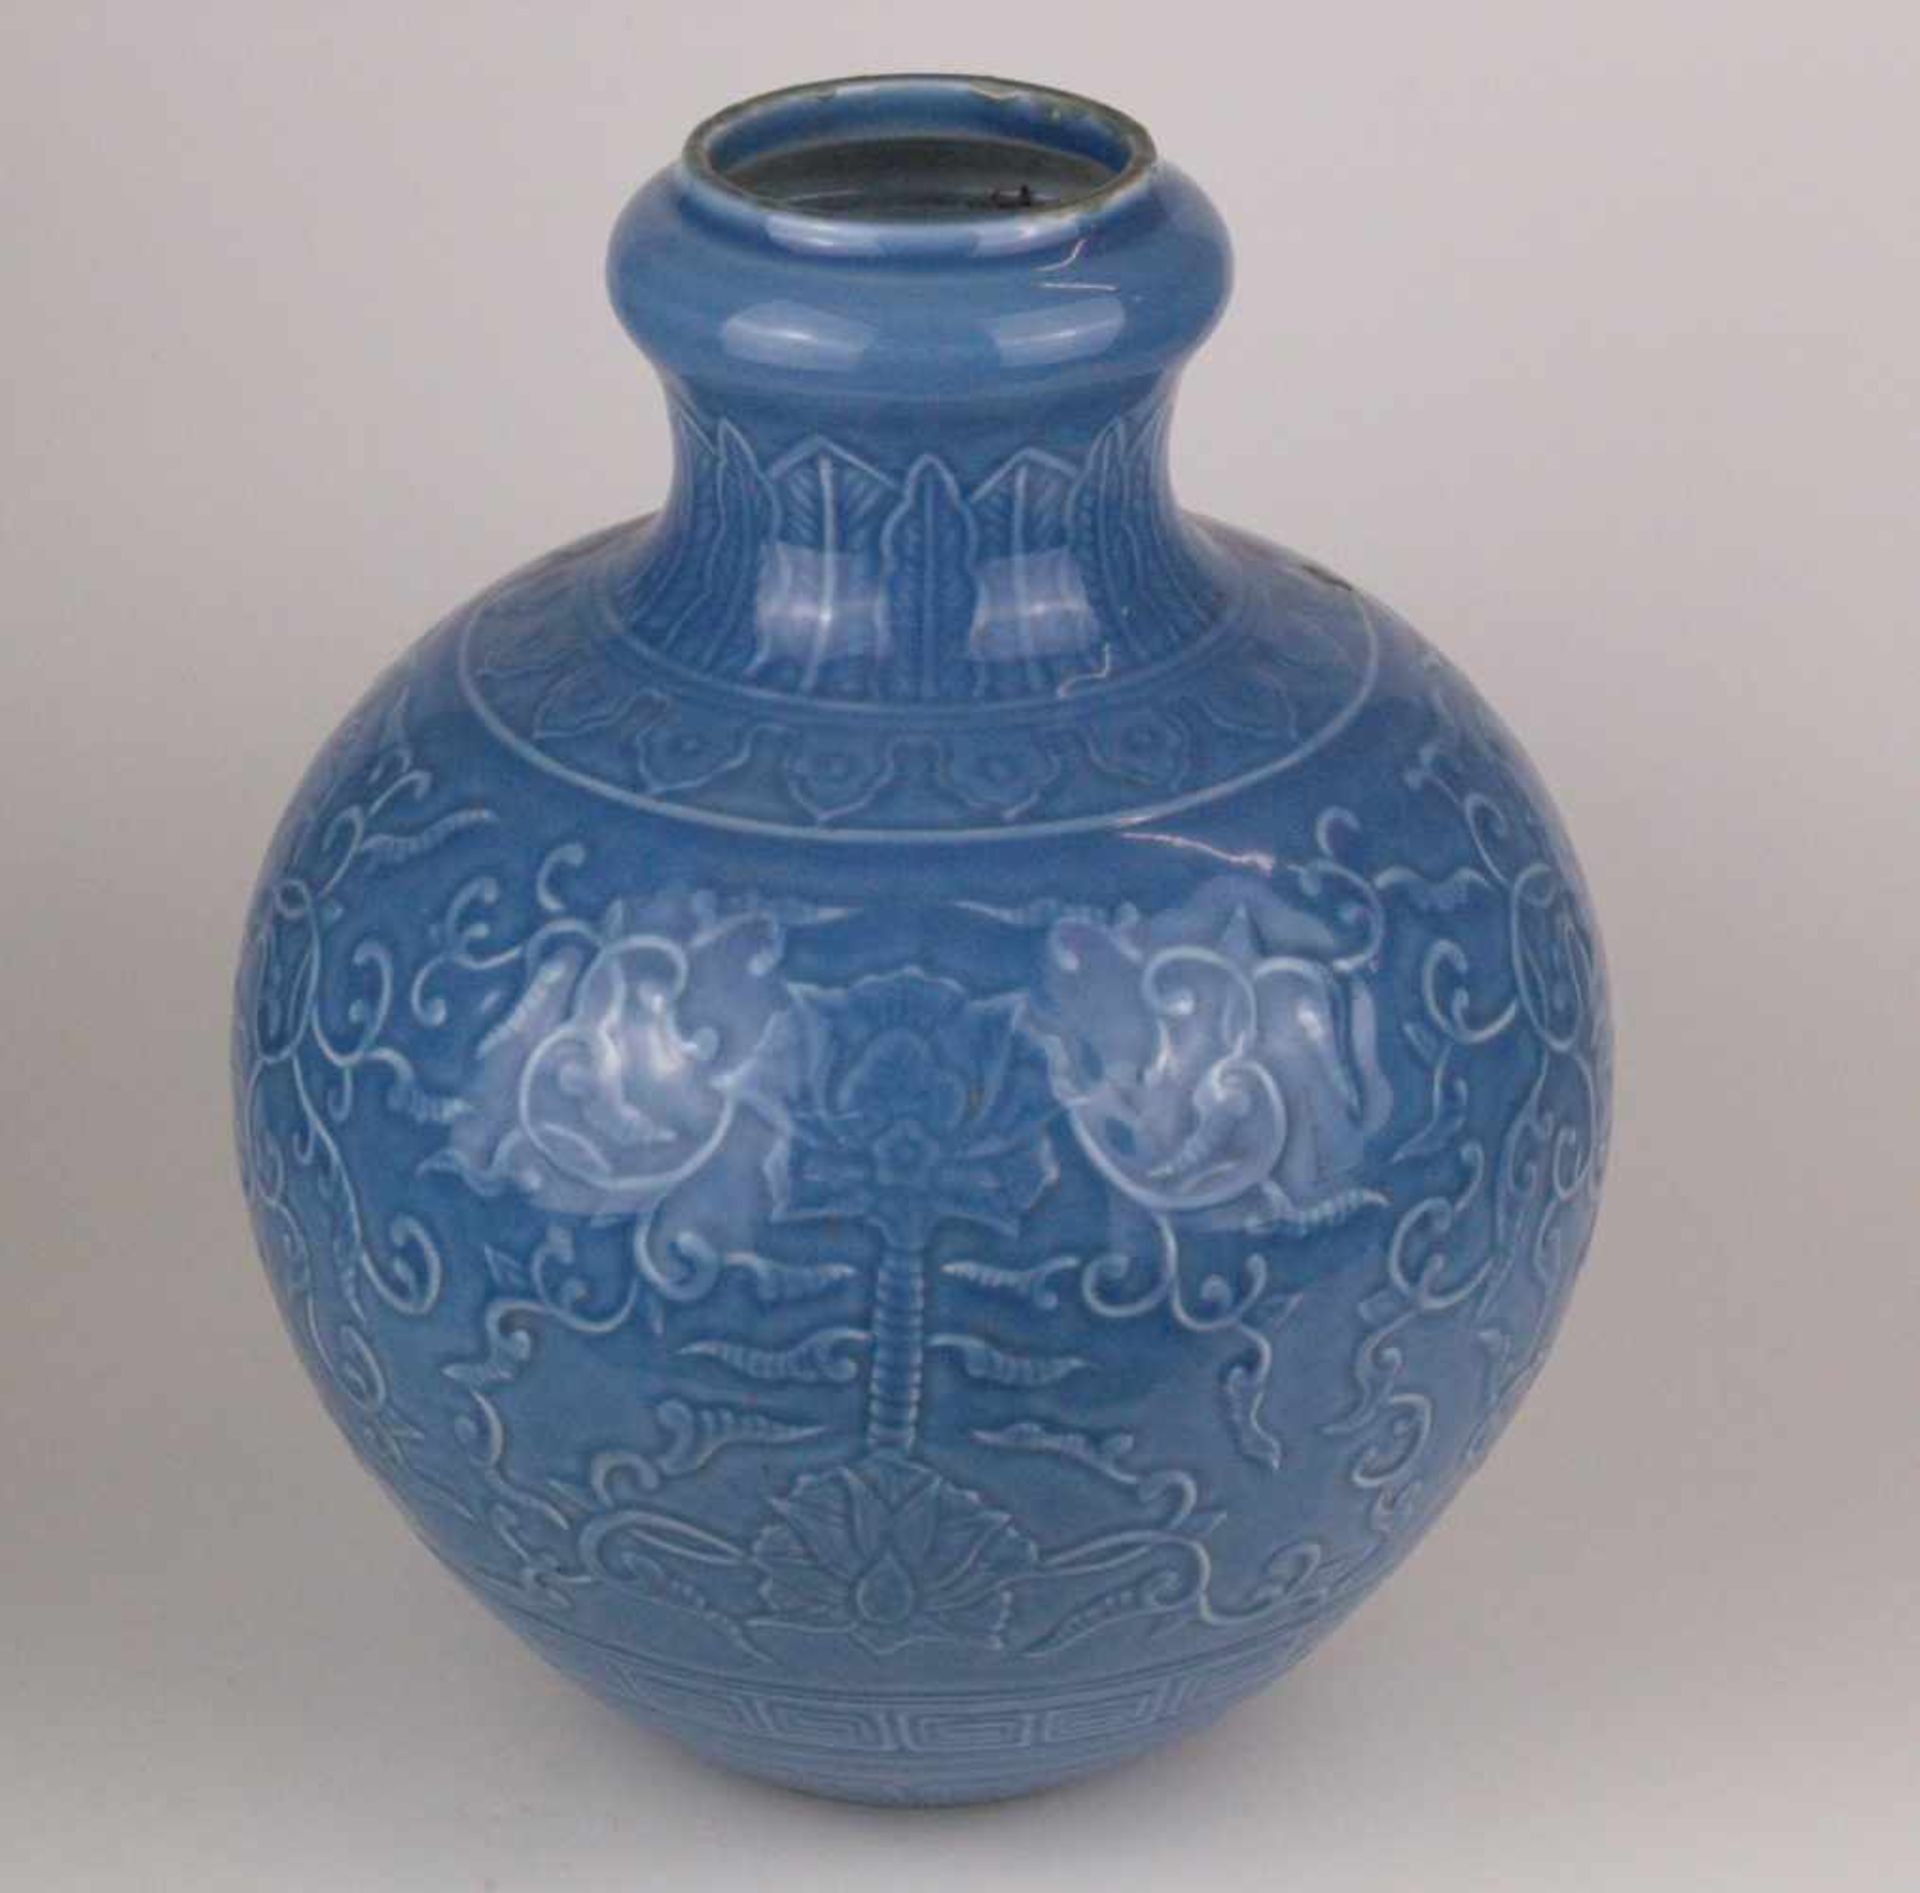 Vase - China, dickwandige Porzellanvase mit blauer Puderglasur, umlaufend Dekor mit blühenden